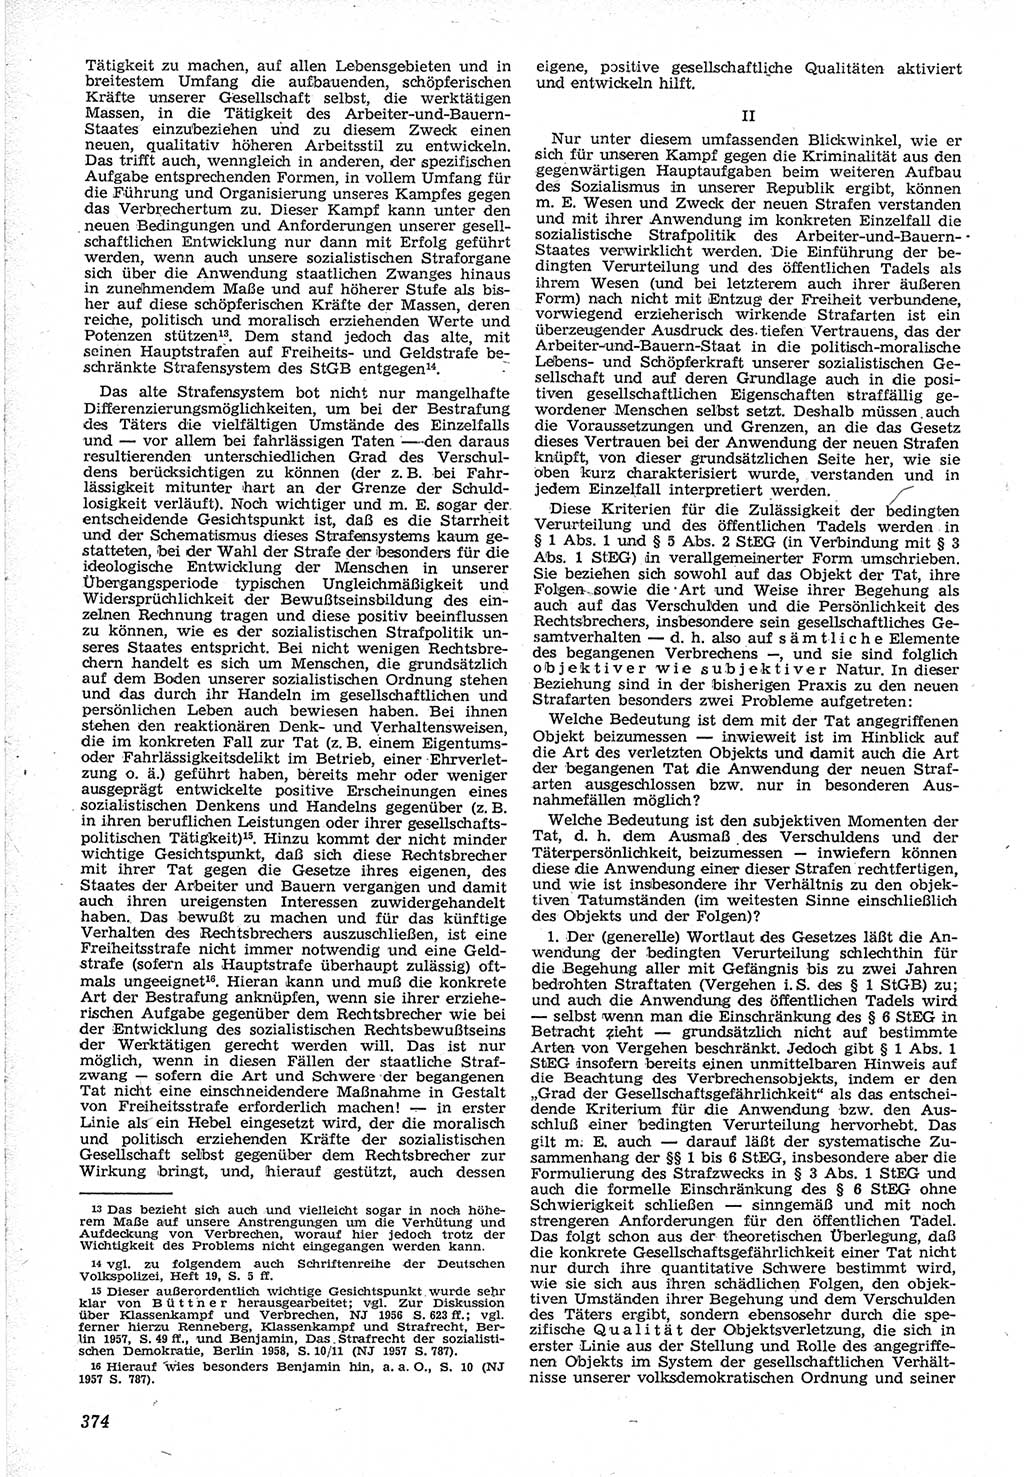 Neue Justiz (NJ), Zeitschrift für Recht und Rechtswissenschaft [Deutsche Demokratische Republik (DDR)], 12. Jahrgang 1958, Seite 374 (NJ DDR 1958, S. 374)